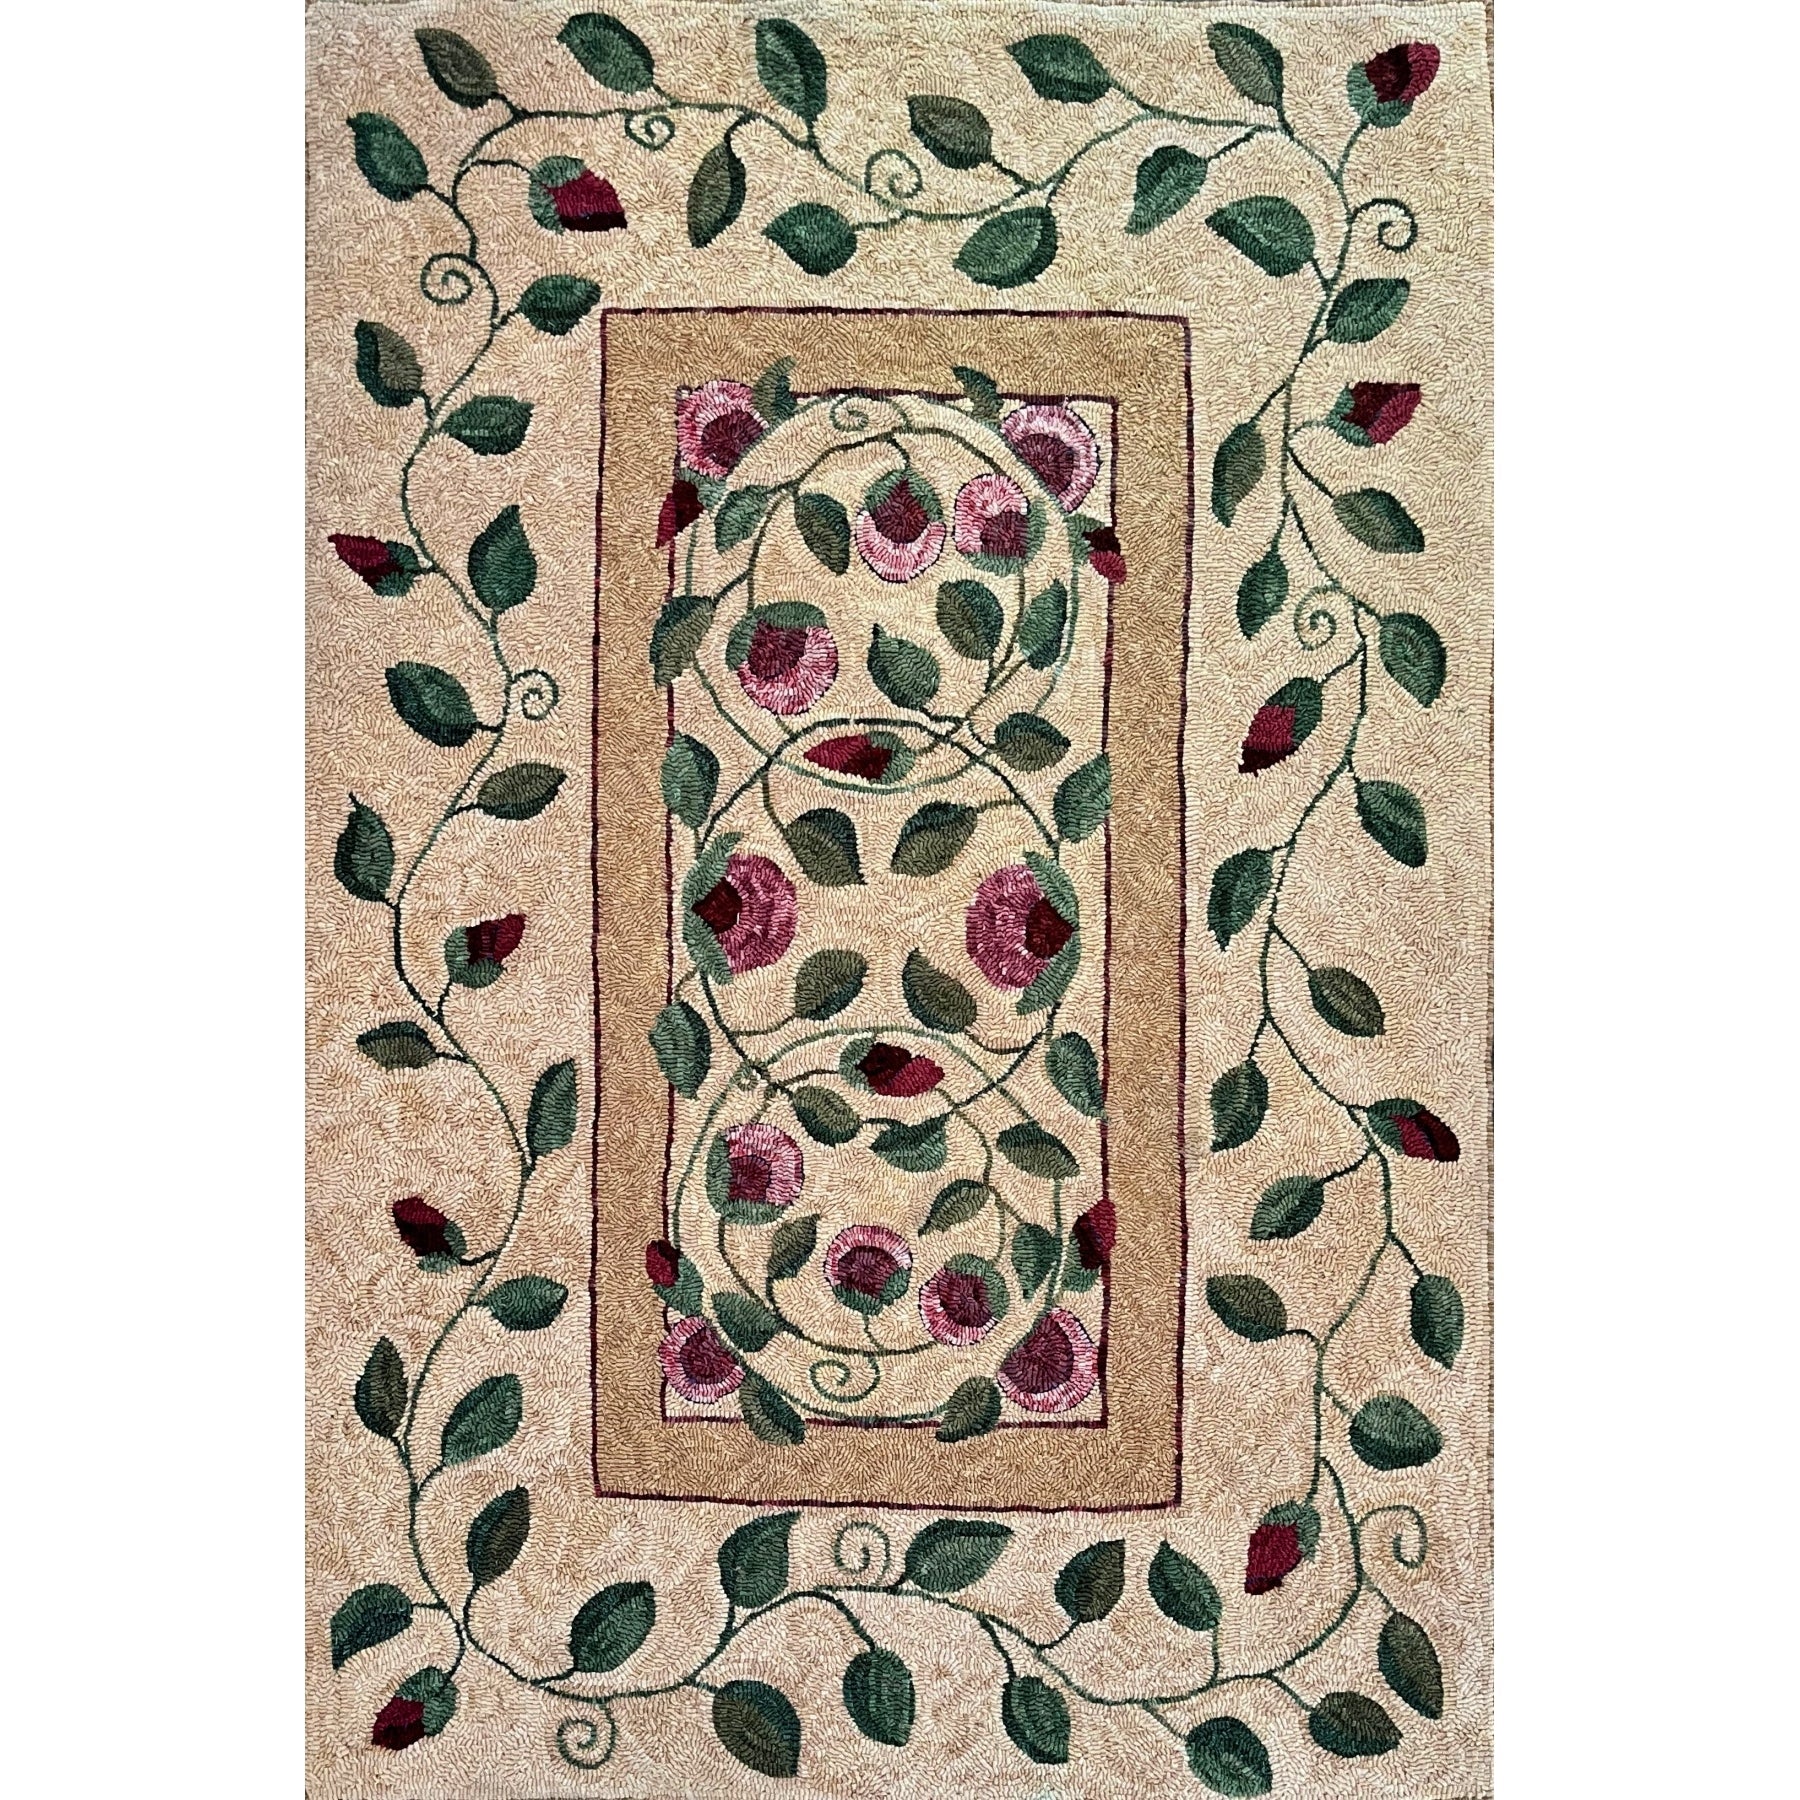 Orb Rose Vine, rug hooked by Dawn Hebert